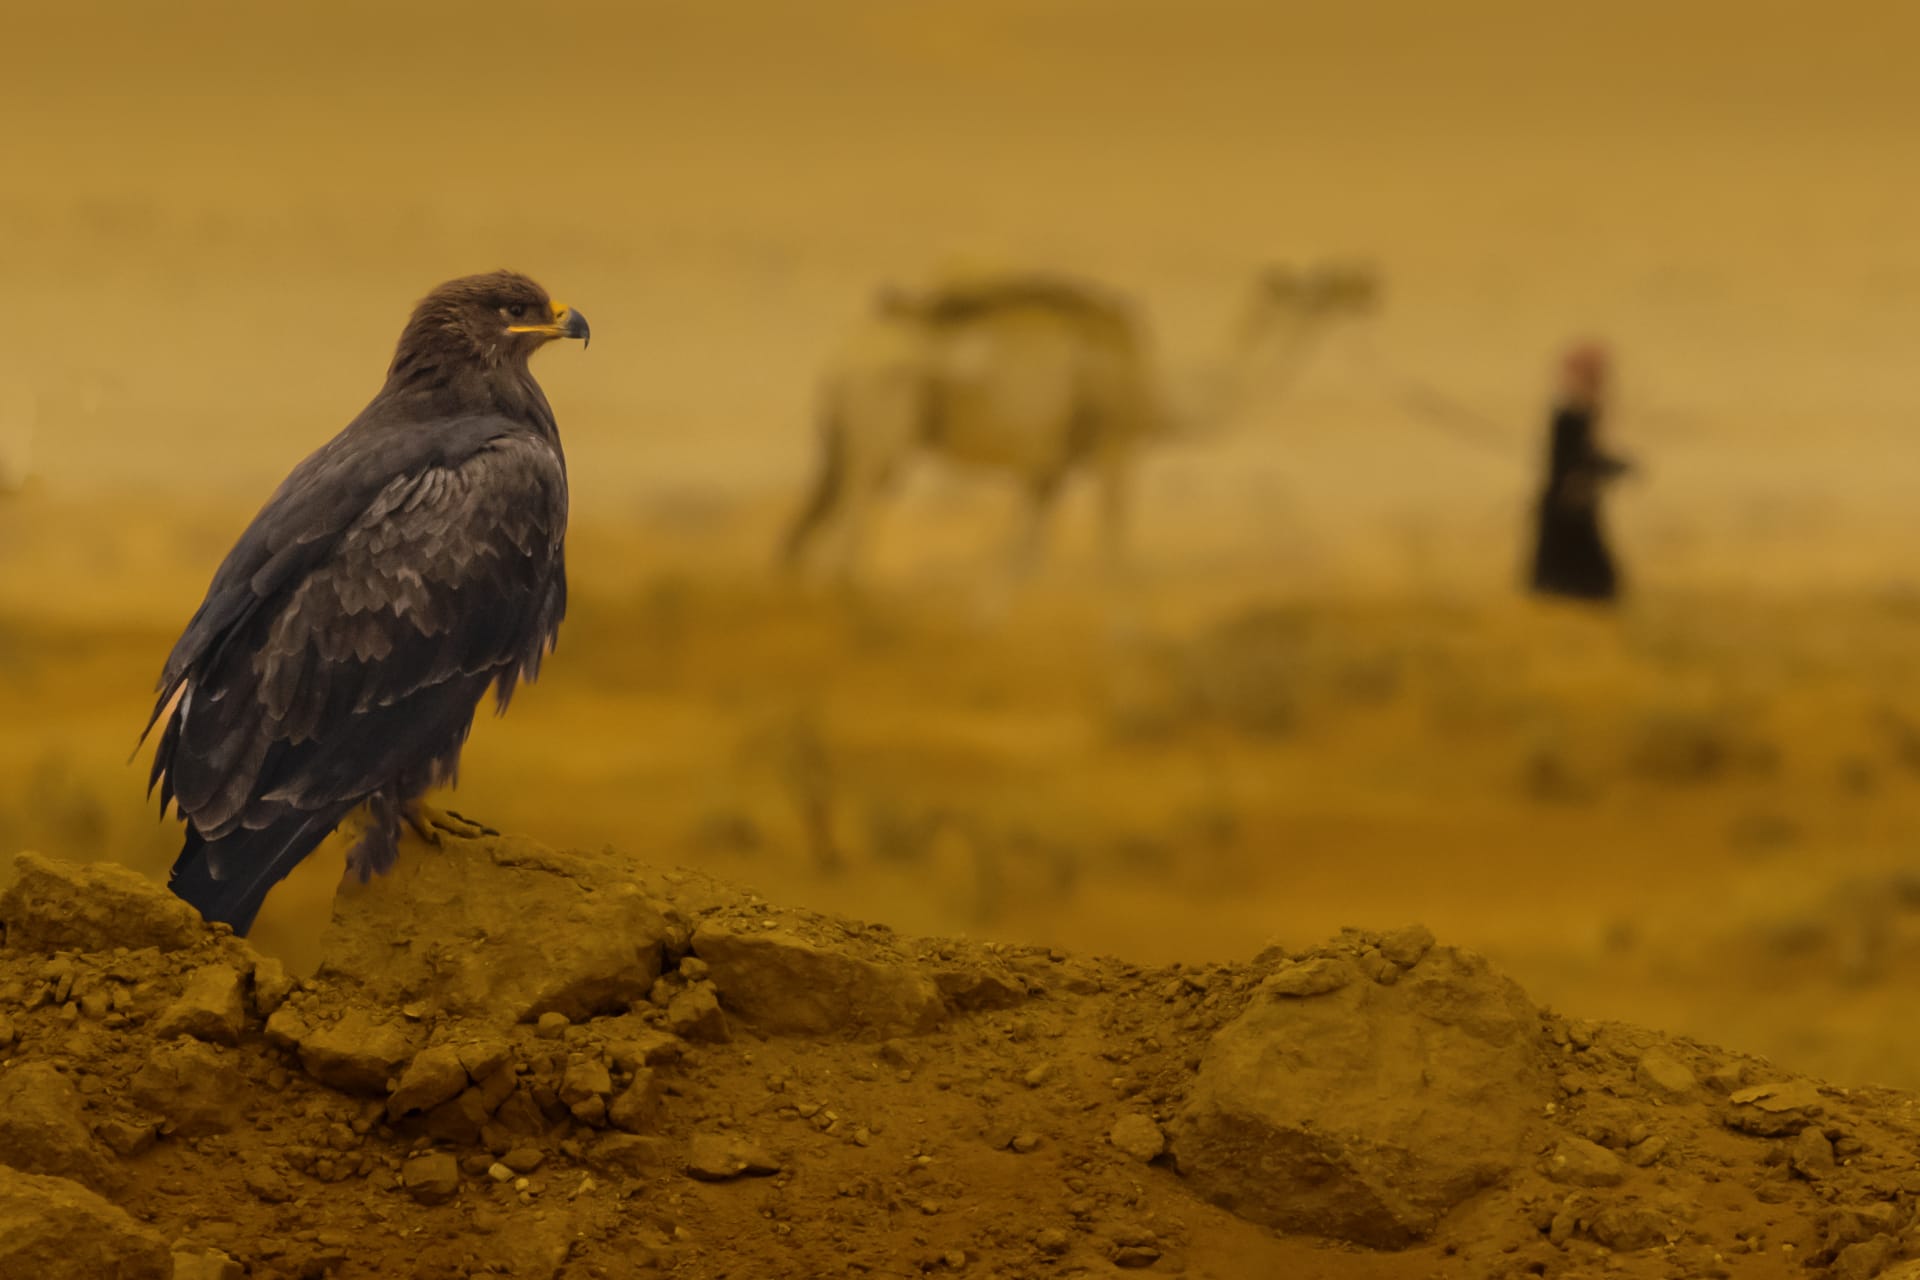 مصور سعودي: الطيور كائنات لم تحظ بـ"التوثيق المطلوب" في المملكة